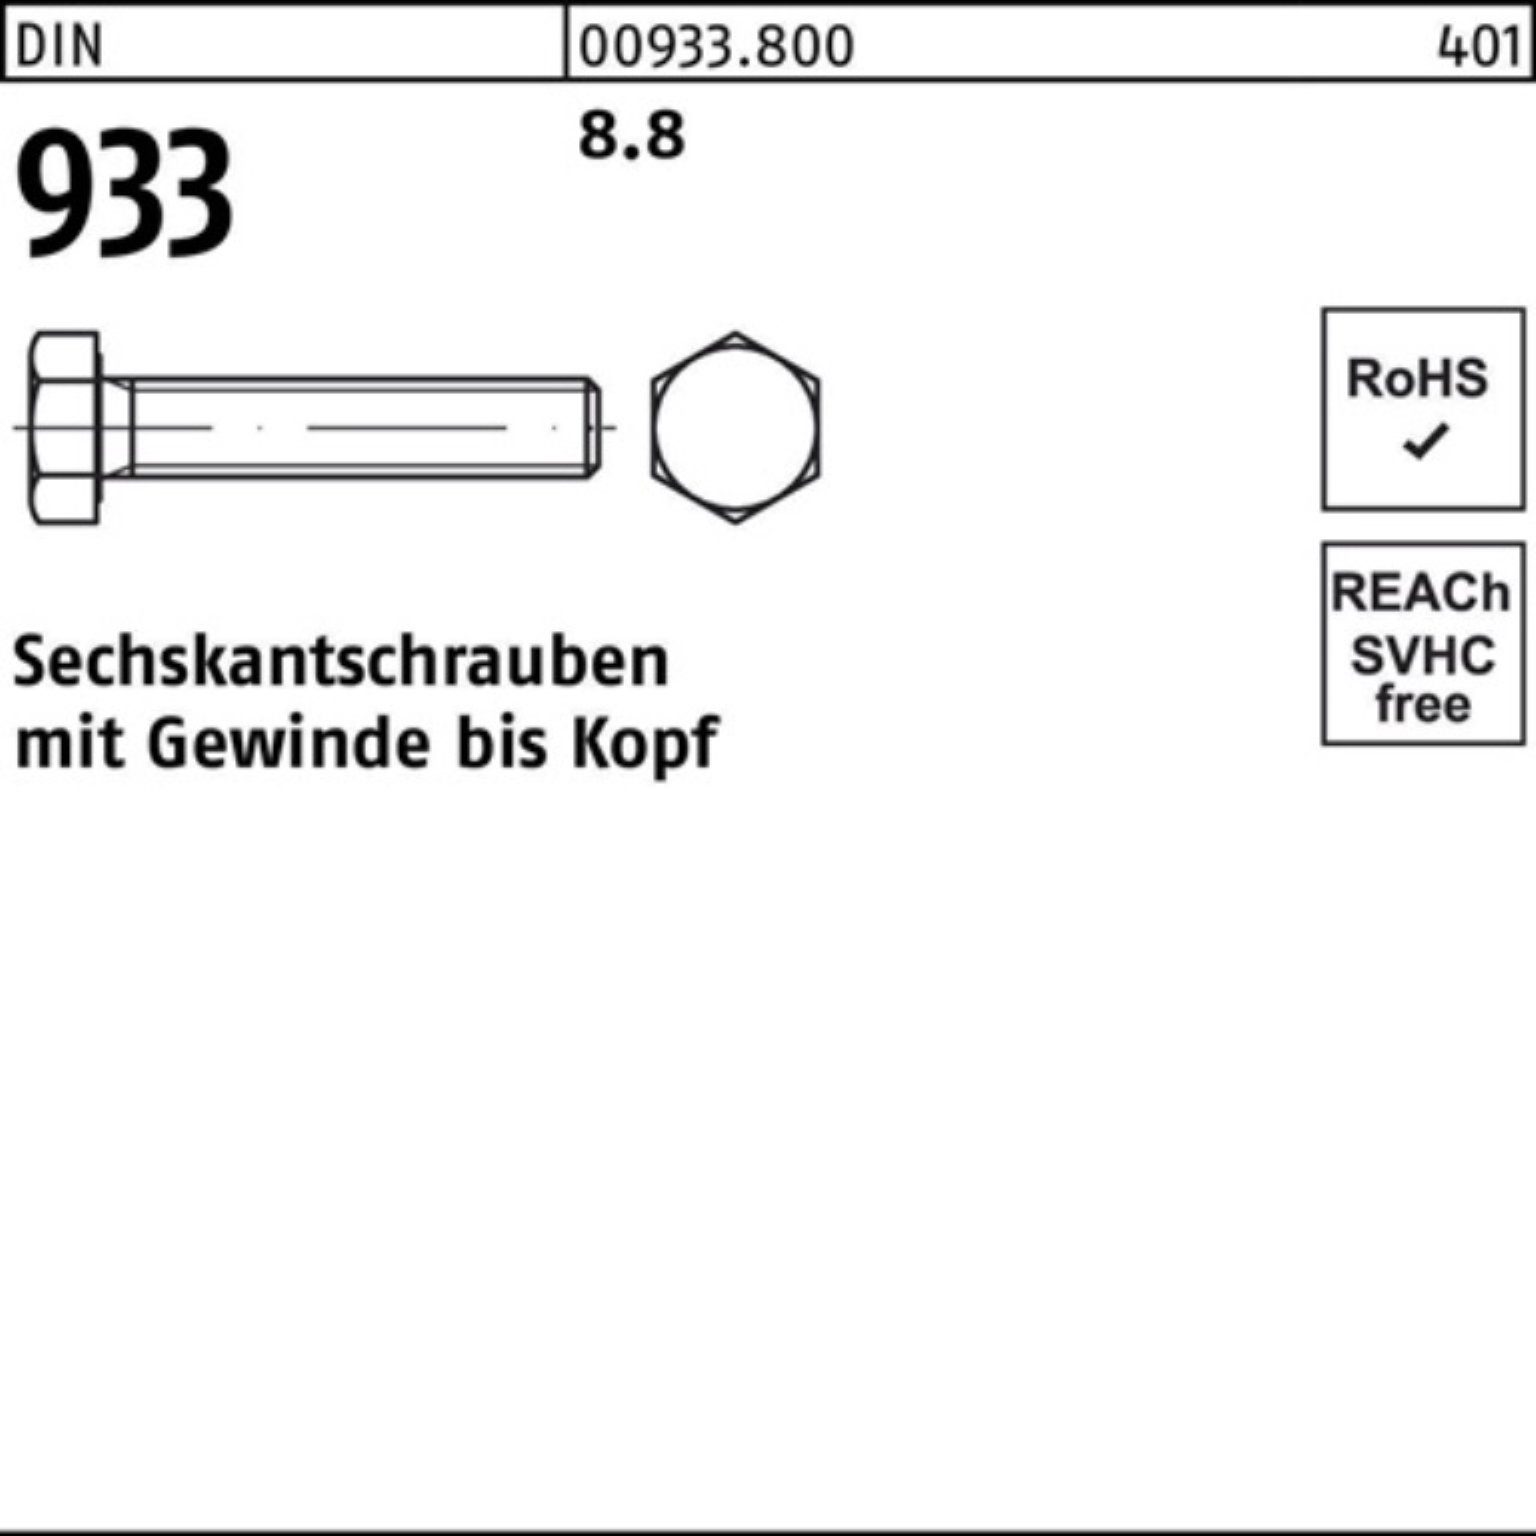 100er DIN 210 Sechskantschraube M24x Stück Reyher Sechskantschraube 1 Pack VG 933 933 8.8 DIN